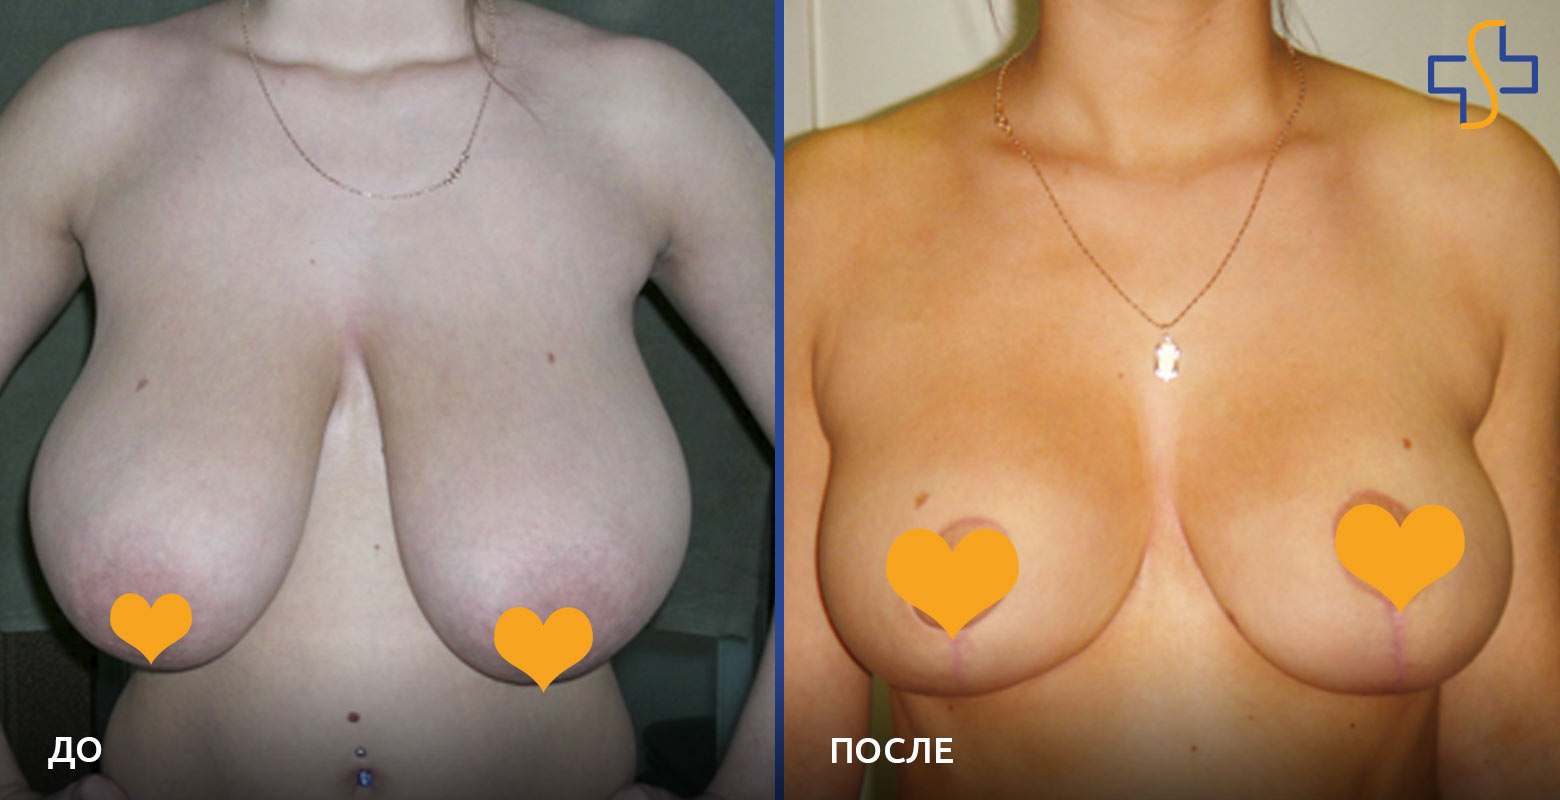 фото до/после проведенной операции по уменьшению груди